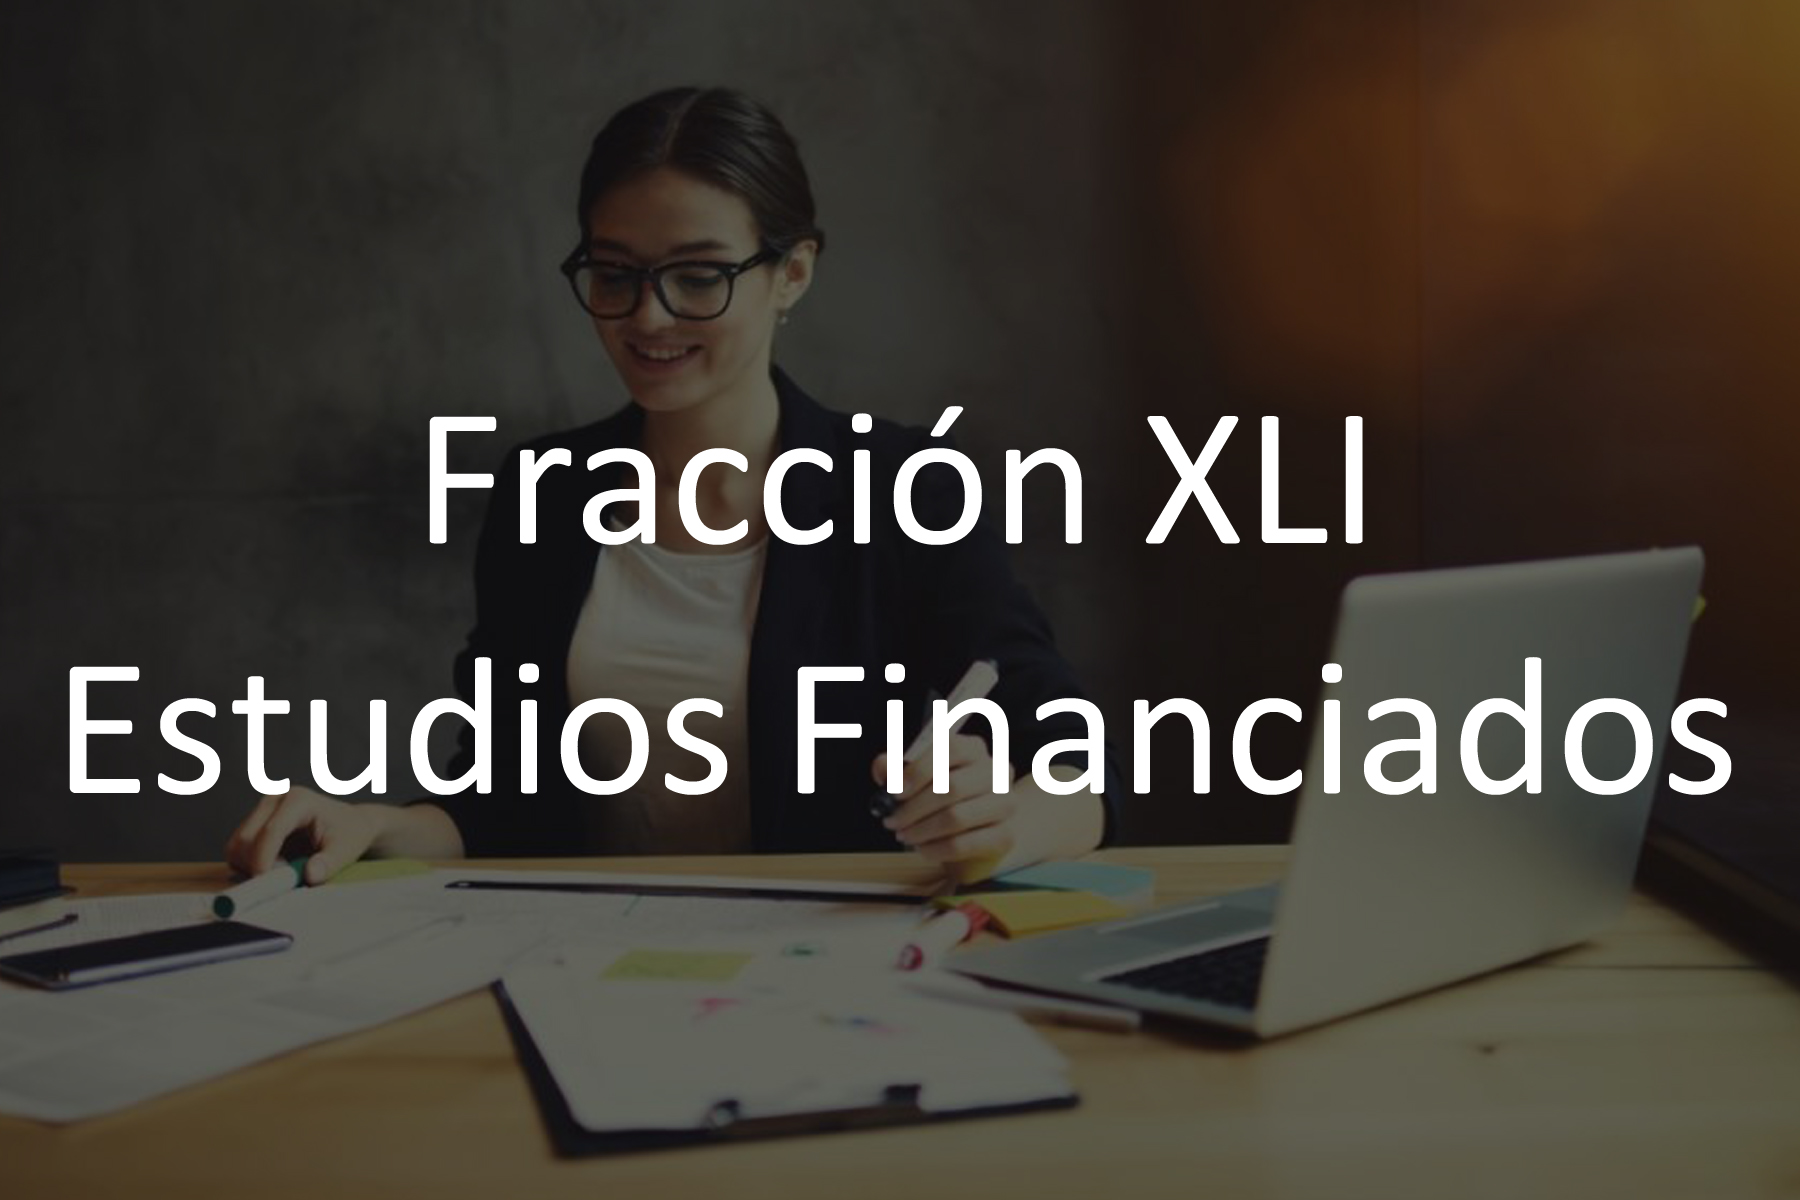 Fracción XLI Estudios Financiados con Recursos Públicos